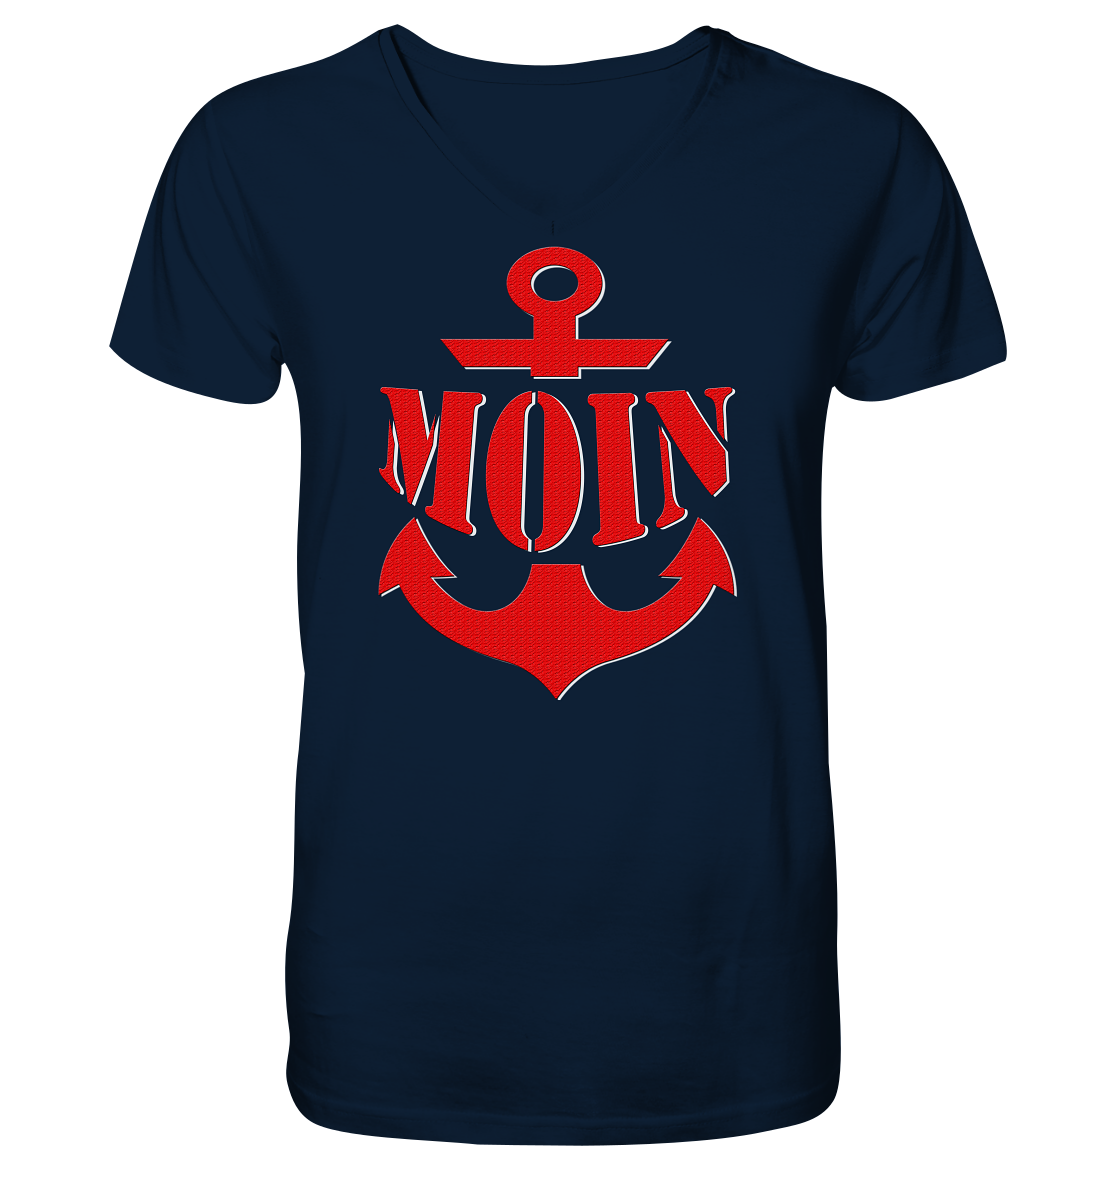 MOIN Anker - Mens Organic V-Neck Shirt